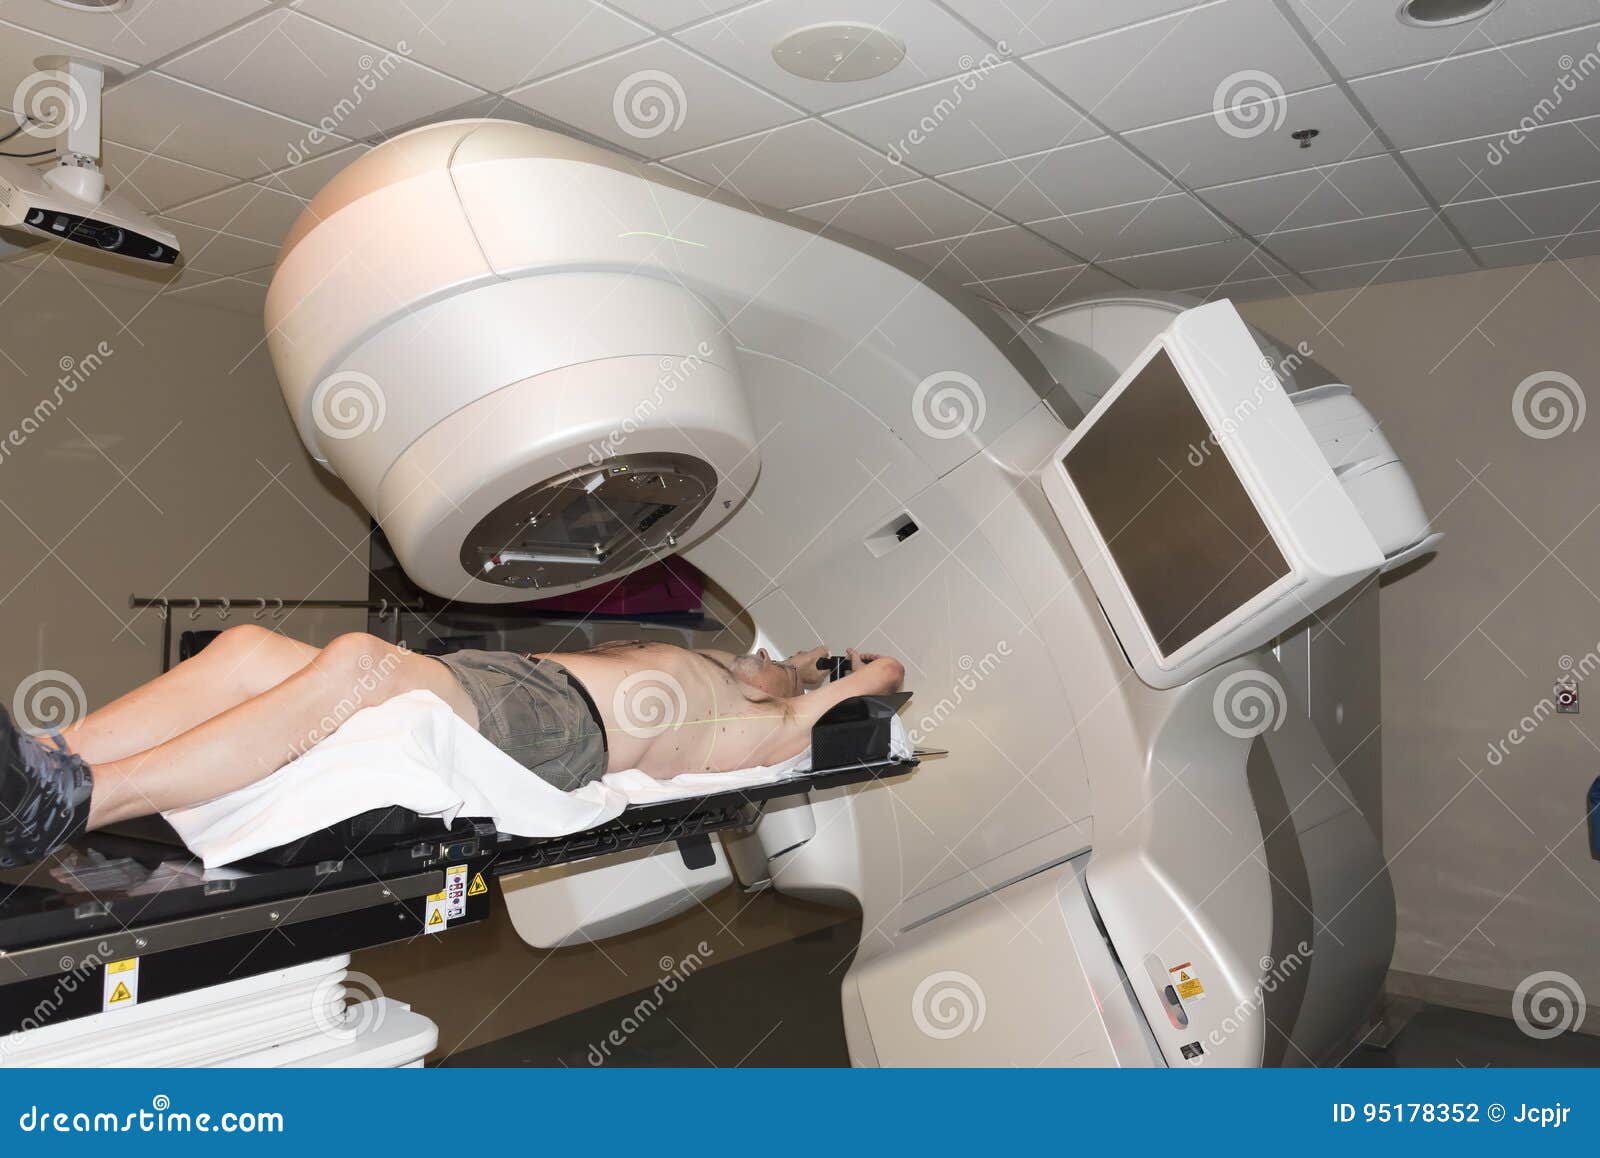 Estudiar radioterapia online